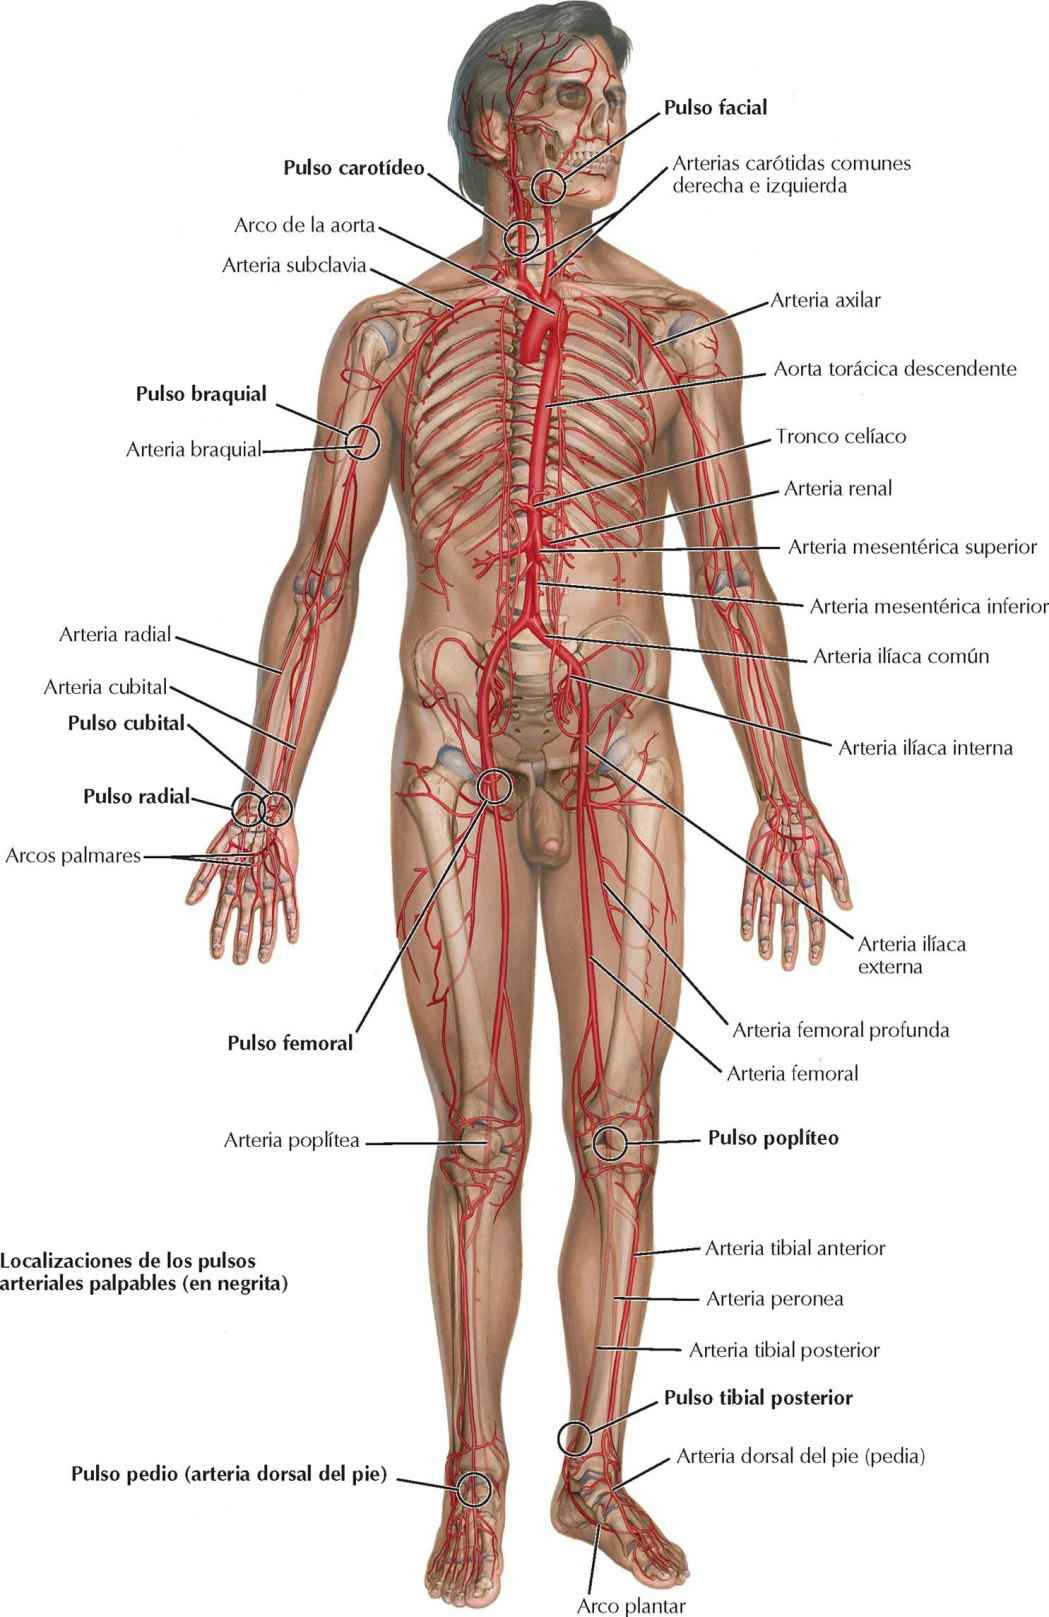 Arterias principales y pulso